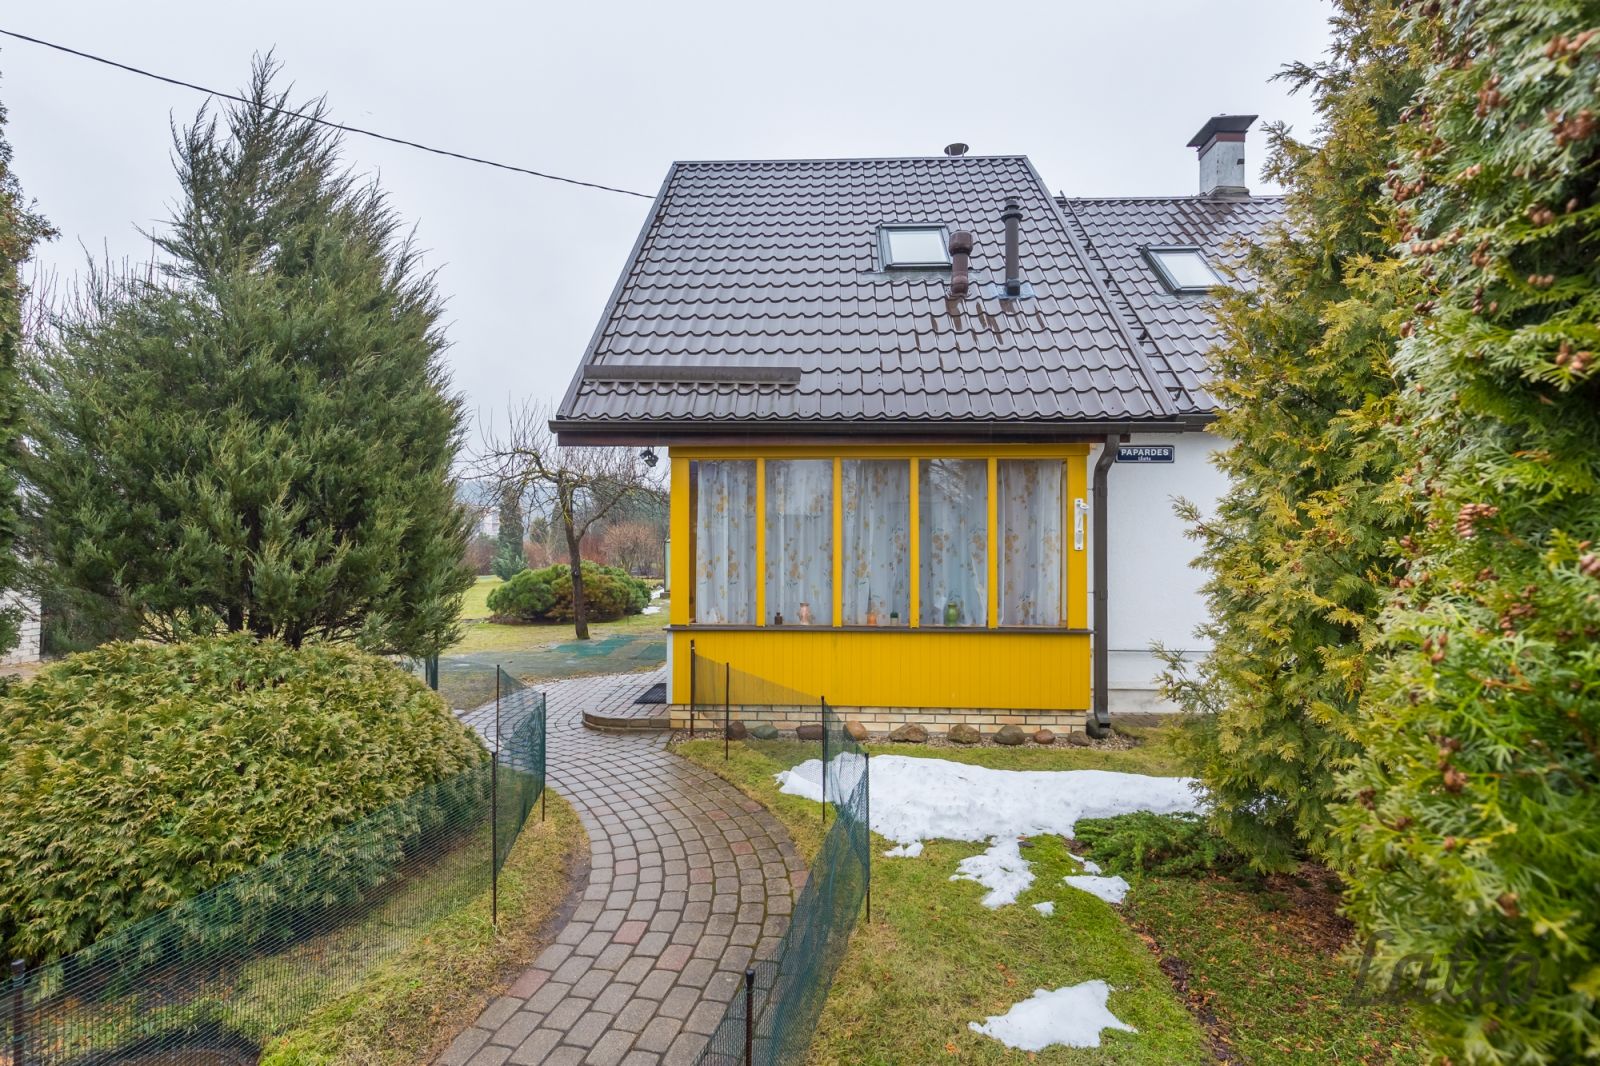 Jaunākie māju piedāvājumi ar cenas samazinājumu līdz pat 20 000 EUR! - Nekustamo īpašumu ziņas - City24.lv nekustamo īpašumu sludinājumu portāls